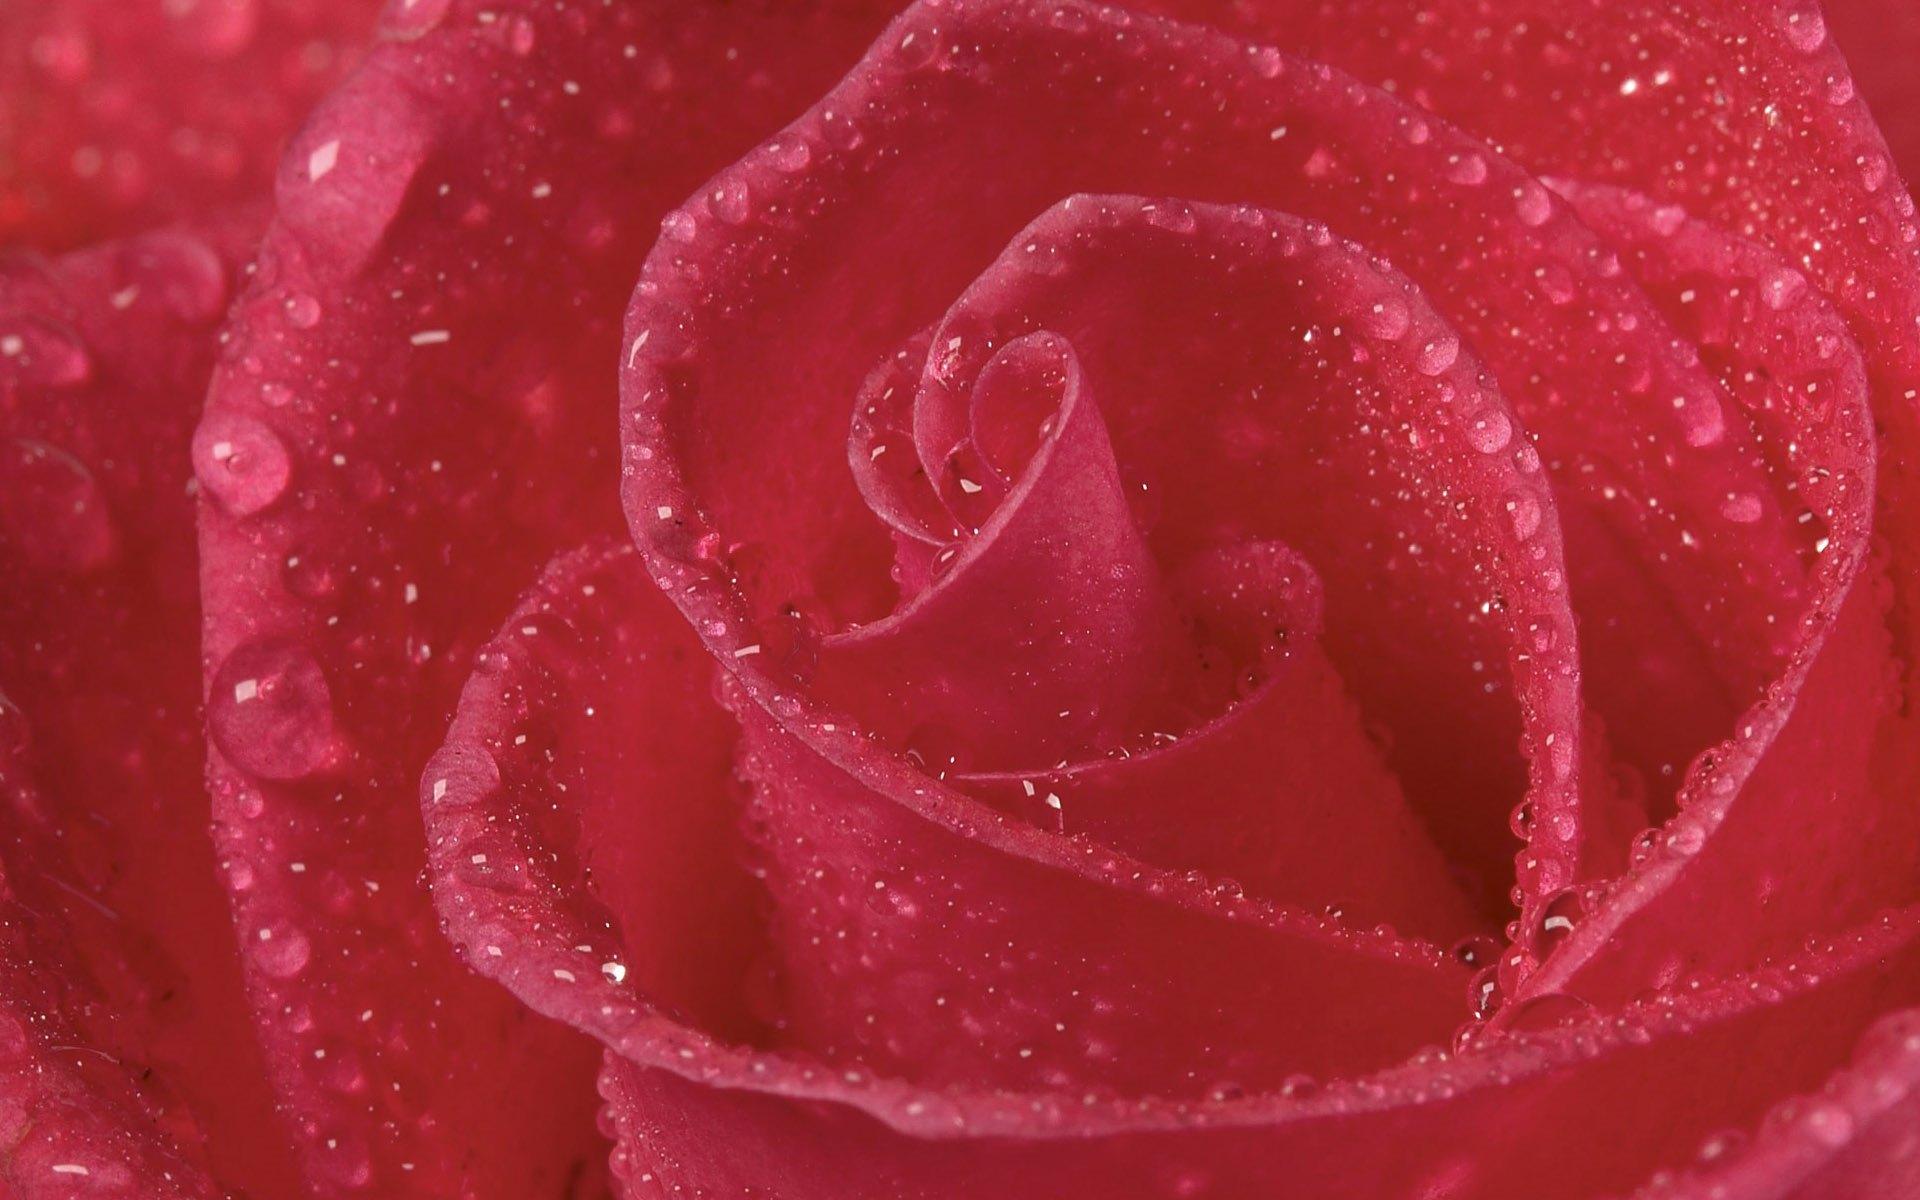 高清晰红色玫瑰花壁纸